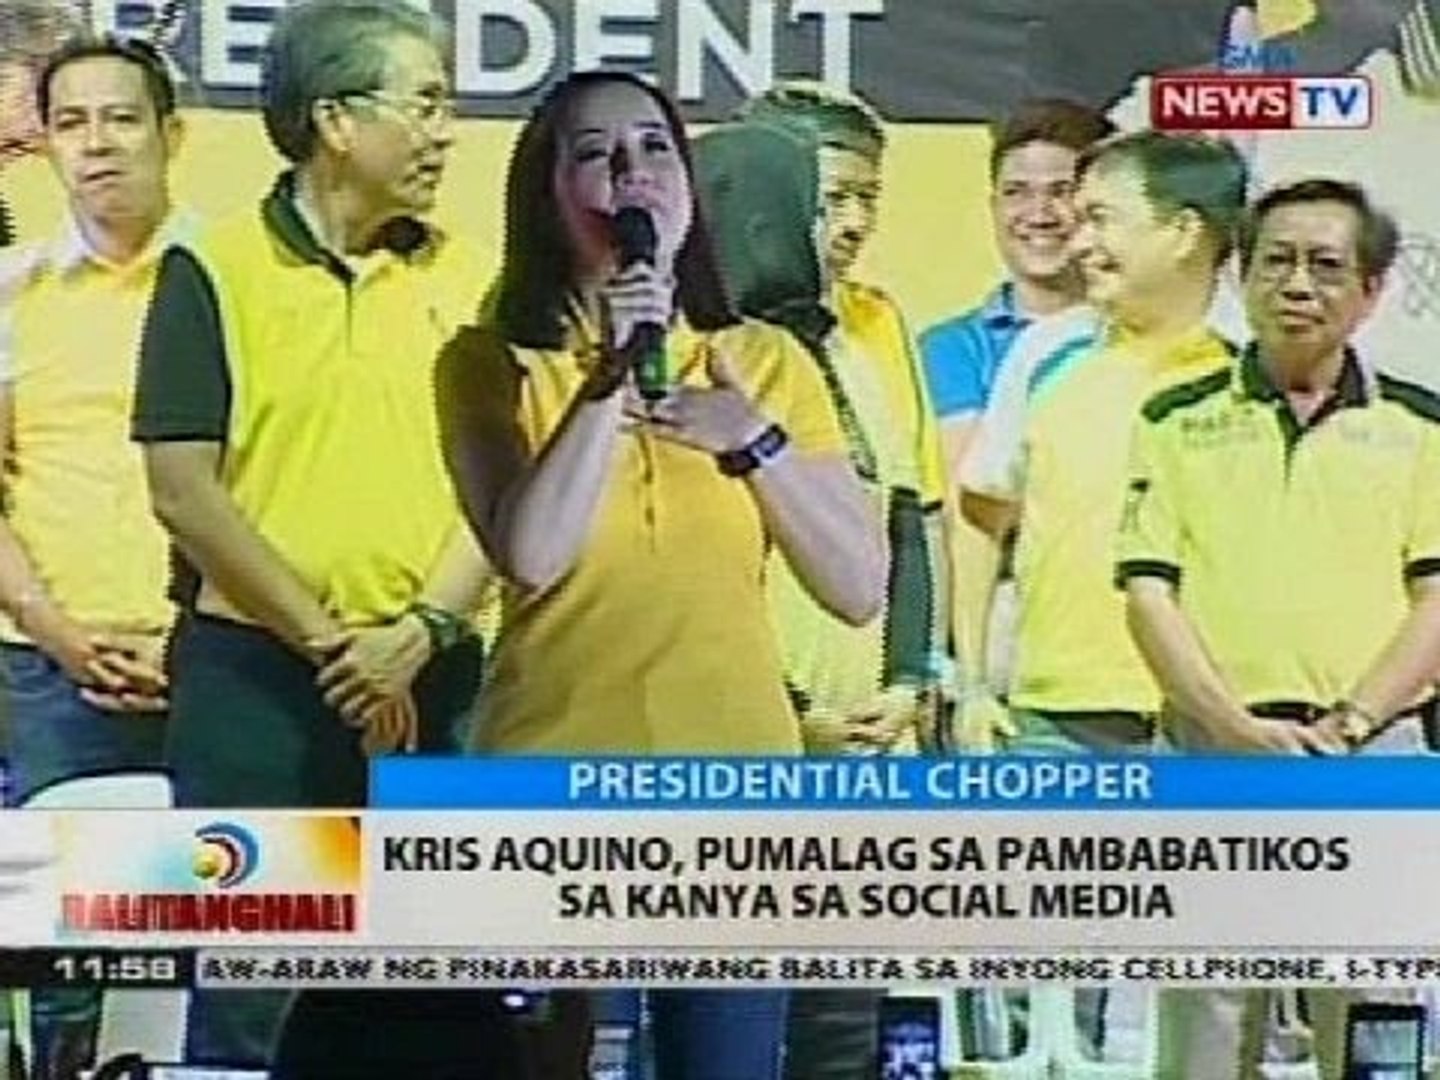 BT: Kris Aquino, binabatikos dahil sa pagsakay sa presidential chopper